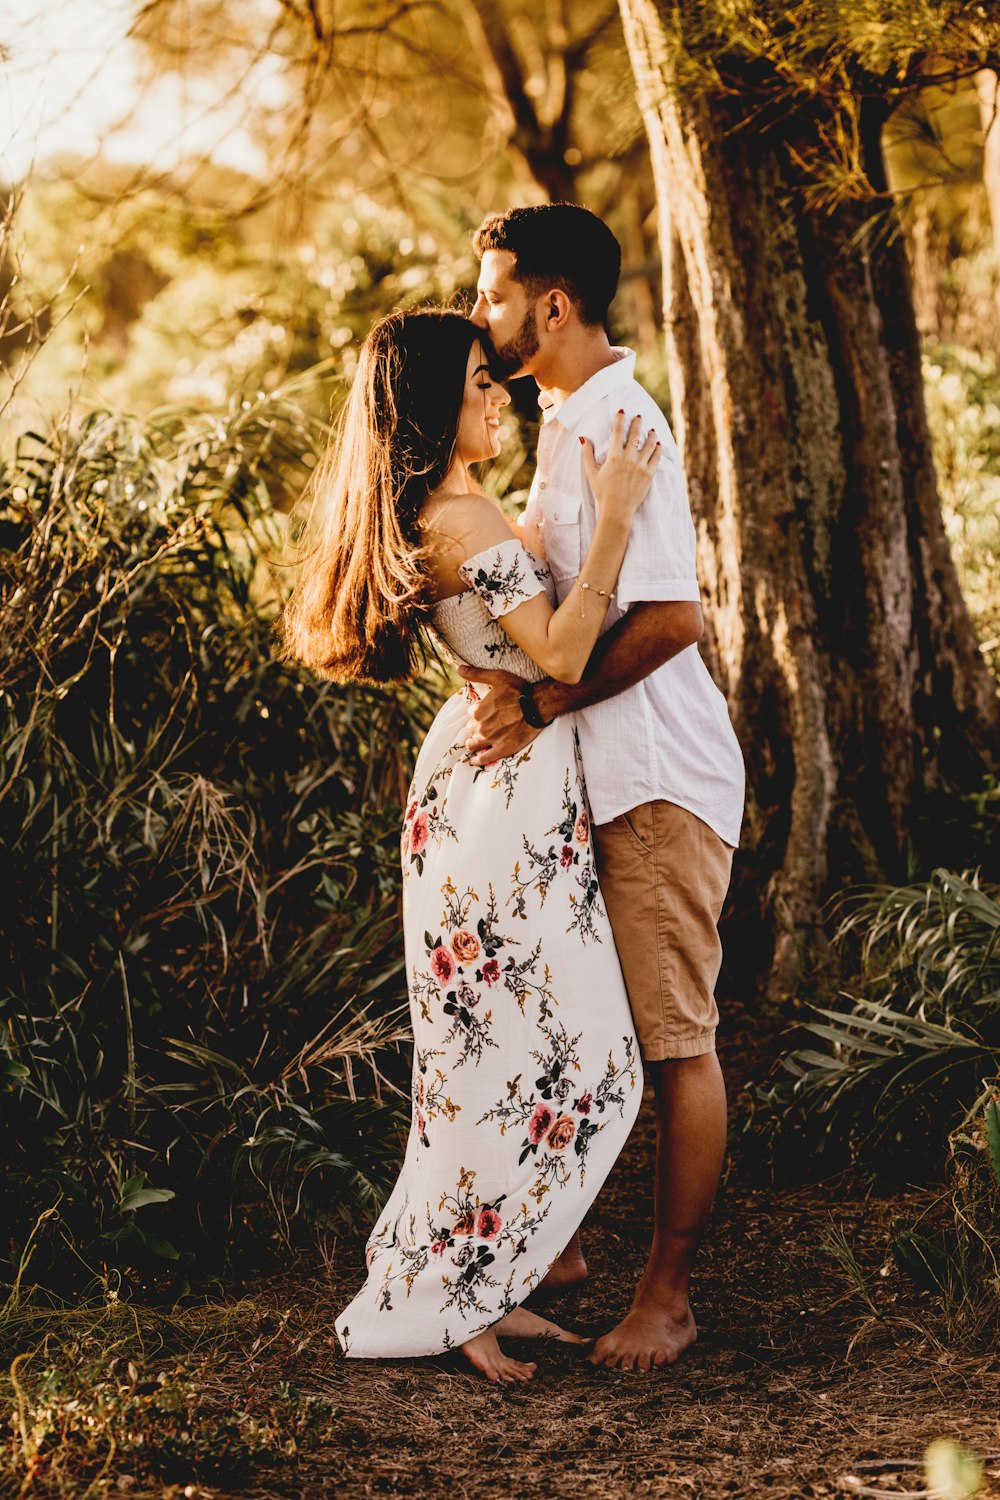 homem e mulher que se beijam perto da árvore marrom durante o dia